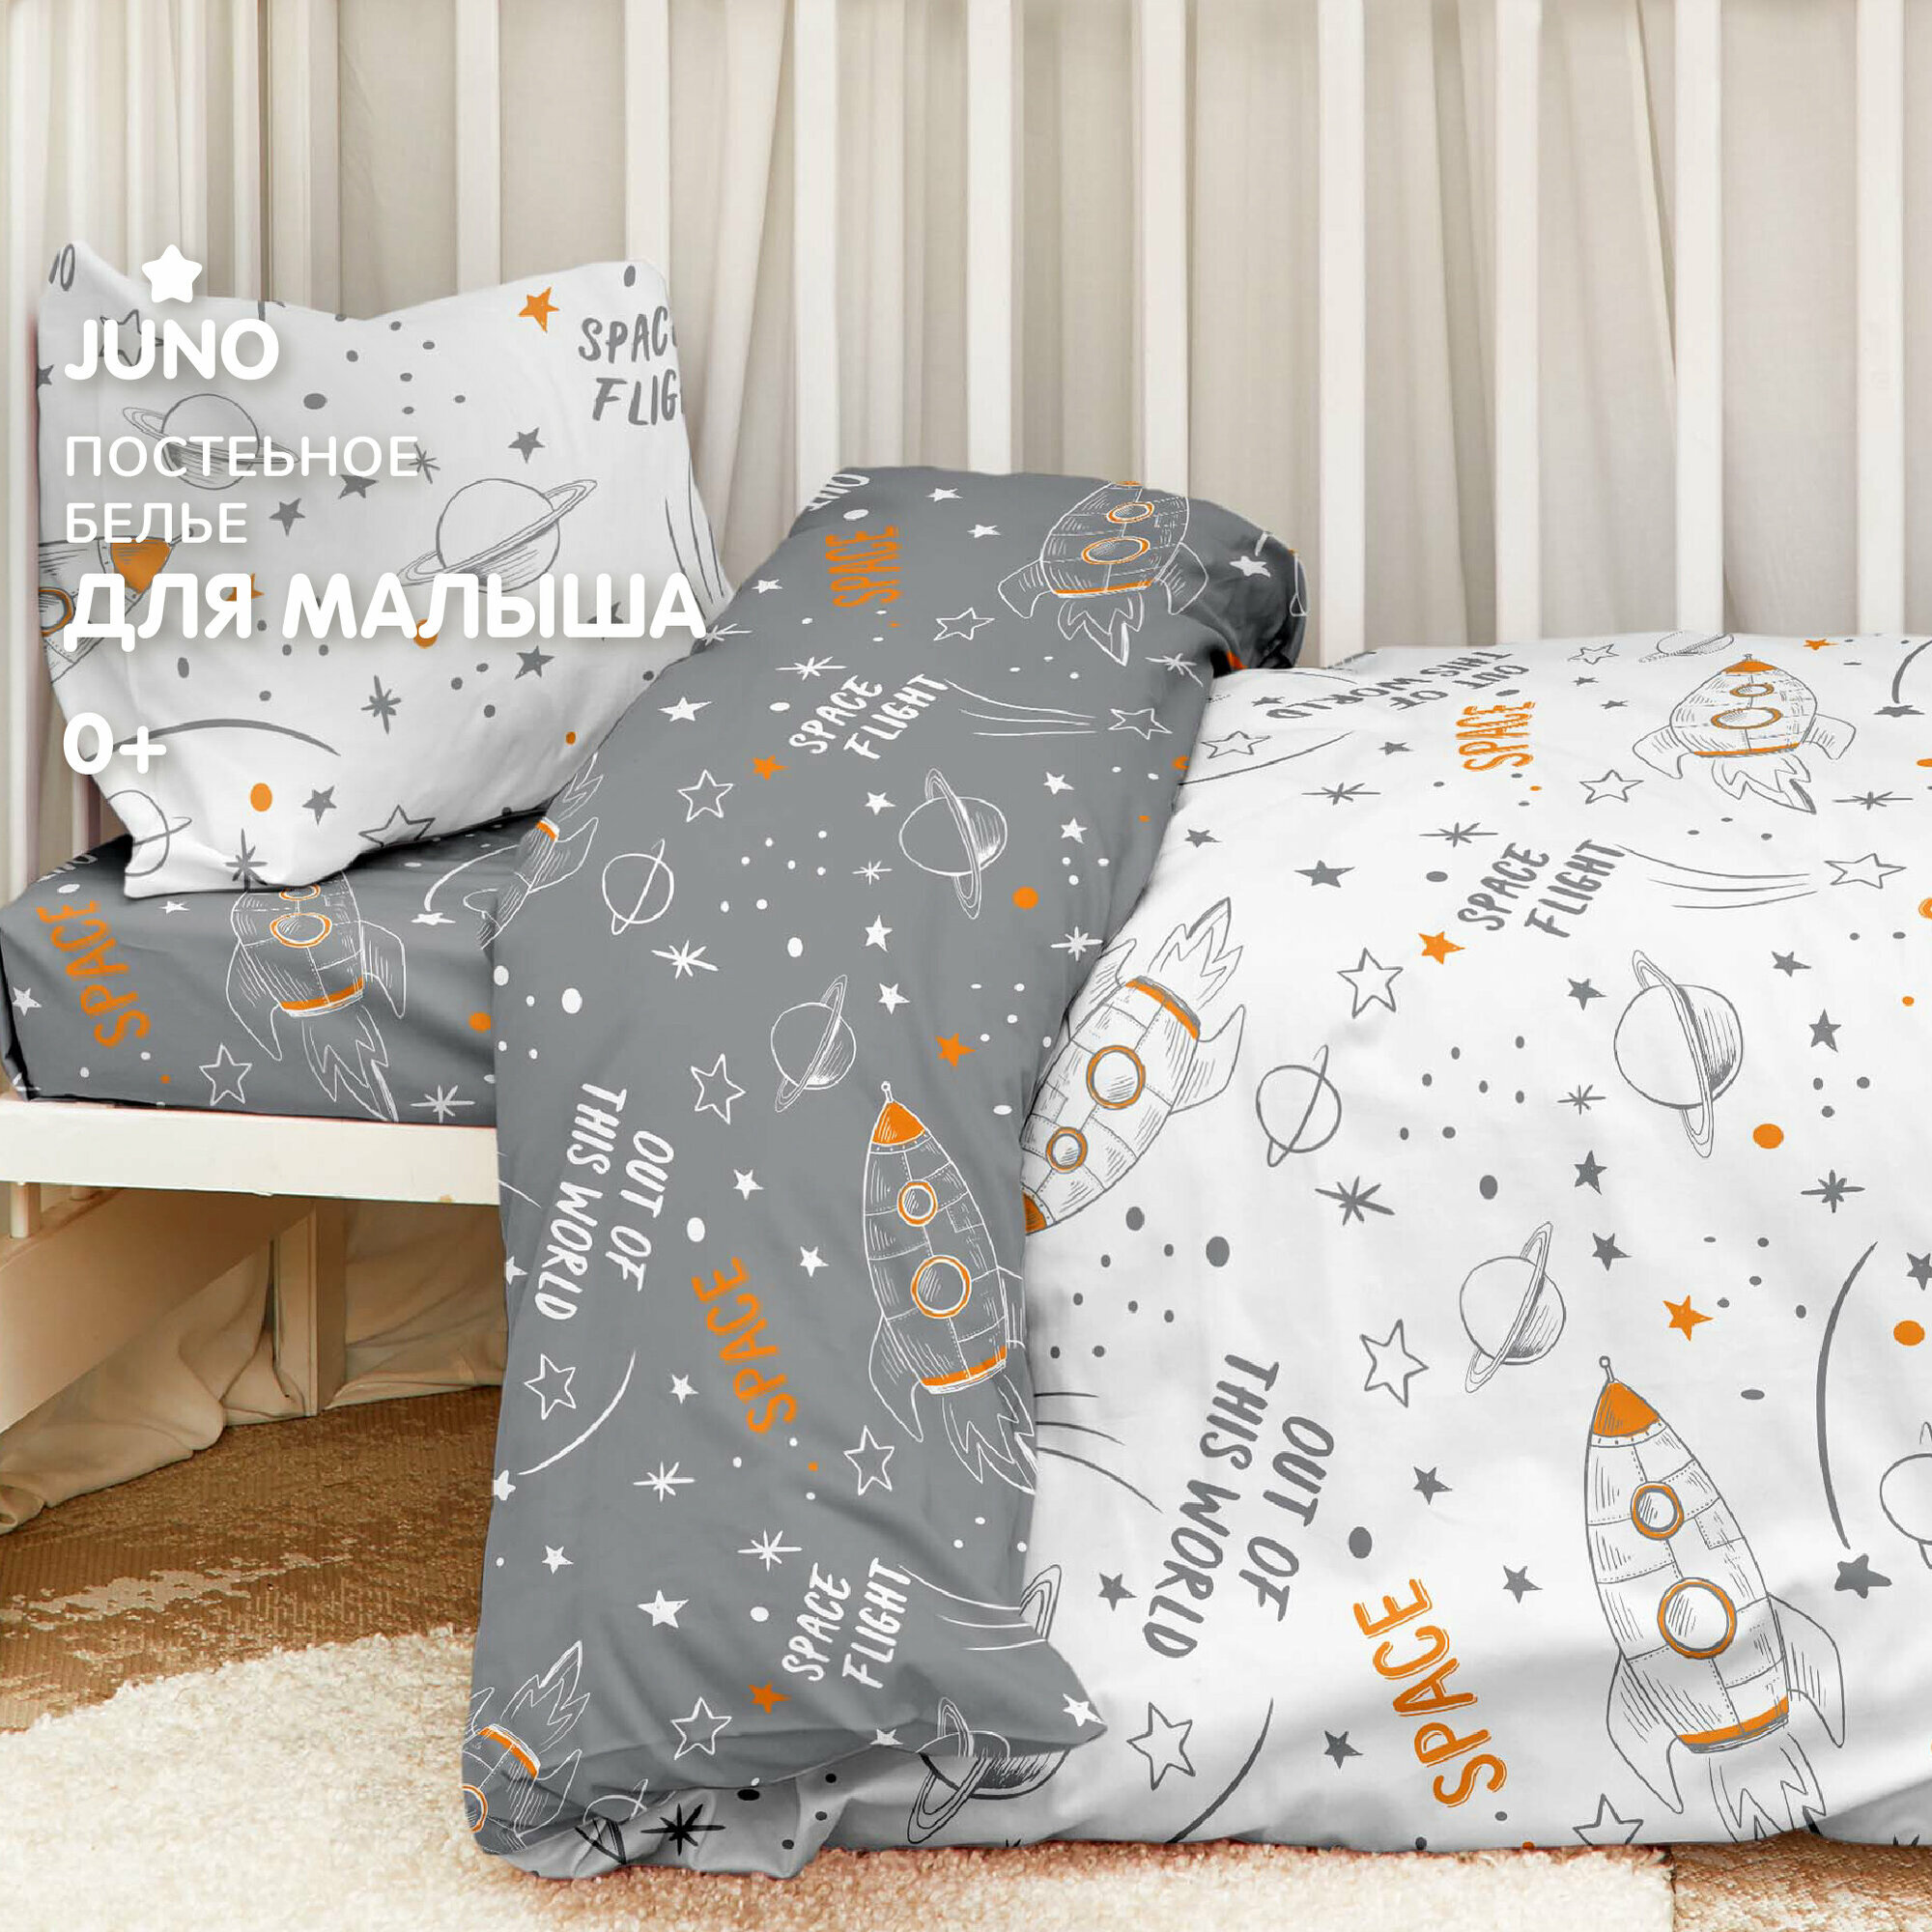 Комплект постельного белья детский поплин "Juno" (40х60) рис. 16726-1/16726-2 Space white